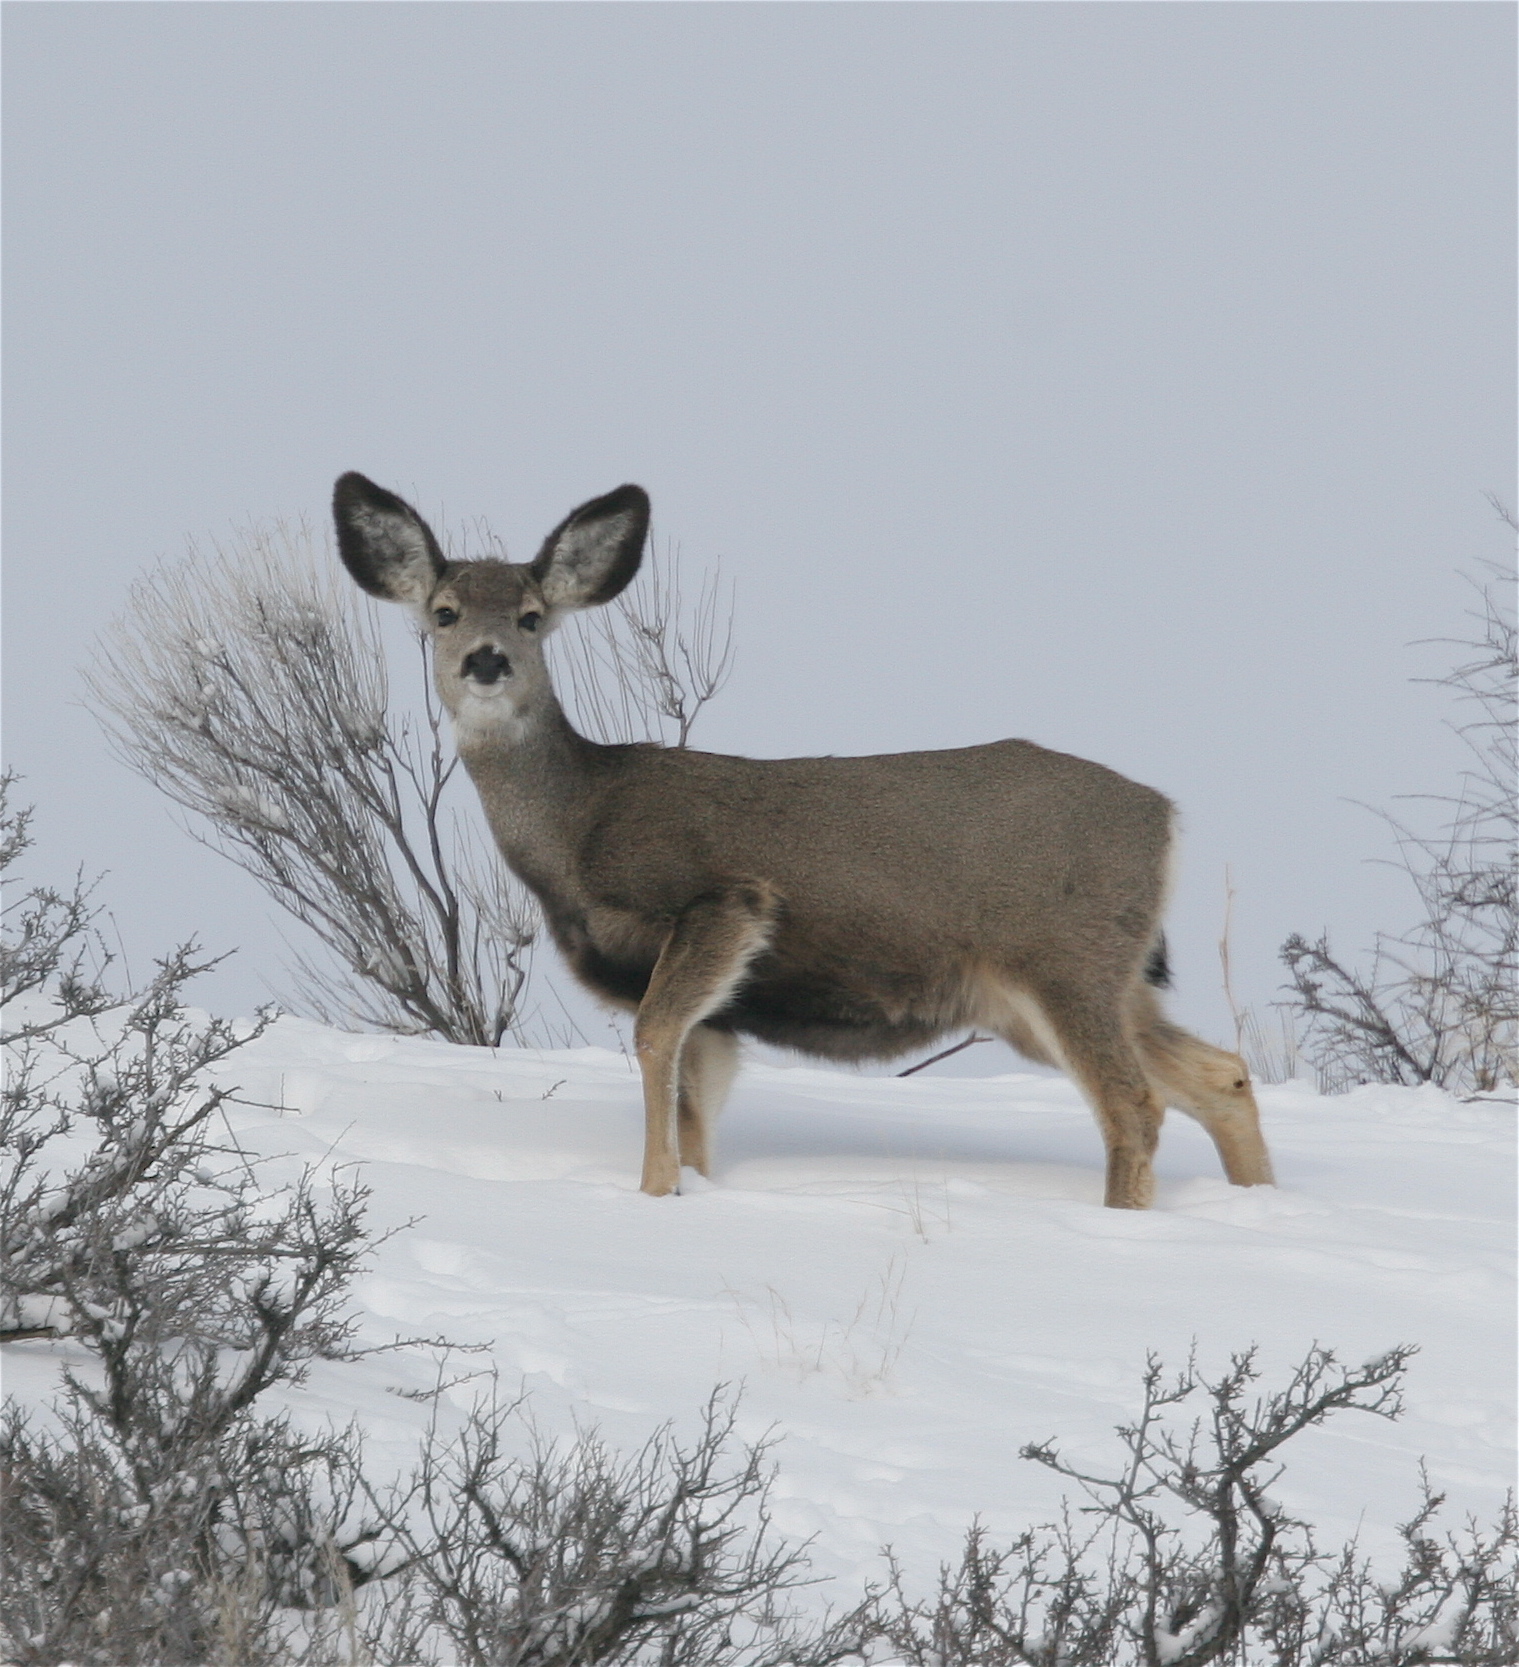 Mule deer, Boise Foothills, Southwest Region, Winter range